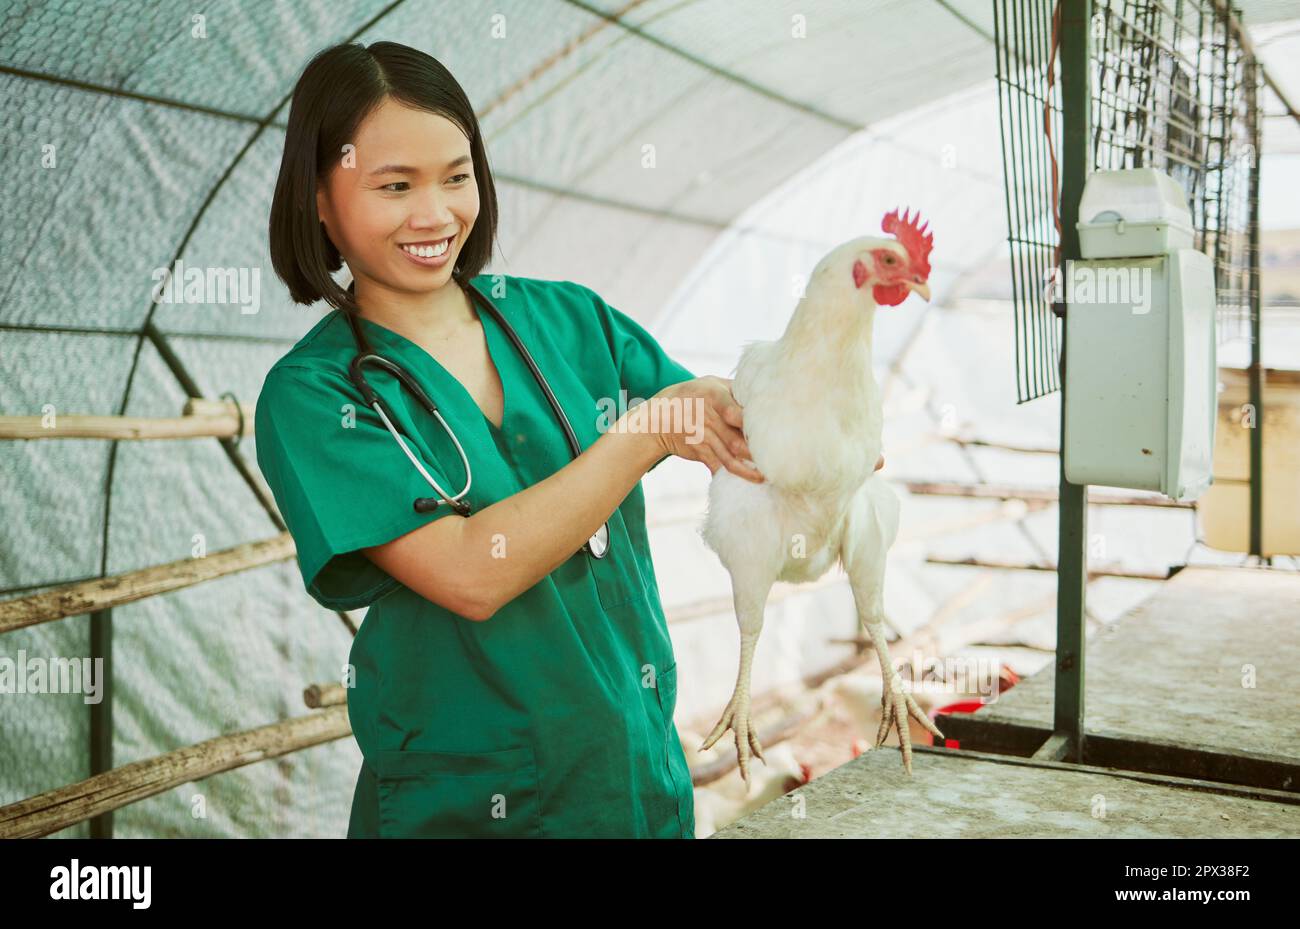 Tierarzt, Hühnerzucht und Frau führen medizinische Untersuchungen, Inspektionen oder Gesundheitsuntersuchungen im Hühnerstall durch. Glücklicher asiatischer Arzt, Geflügel und Wellness t Stockfoto